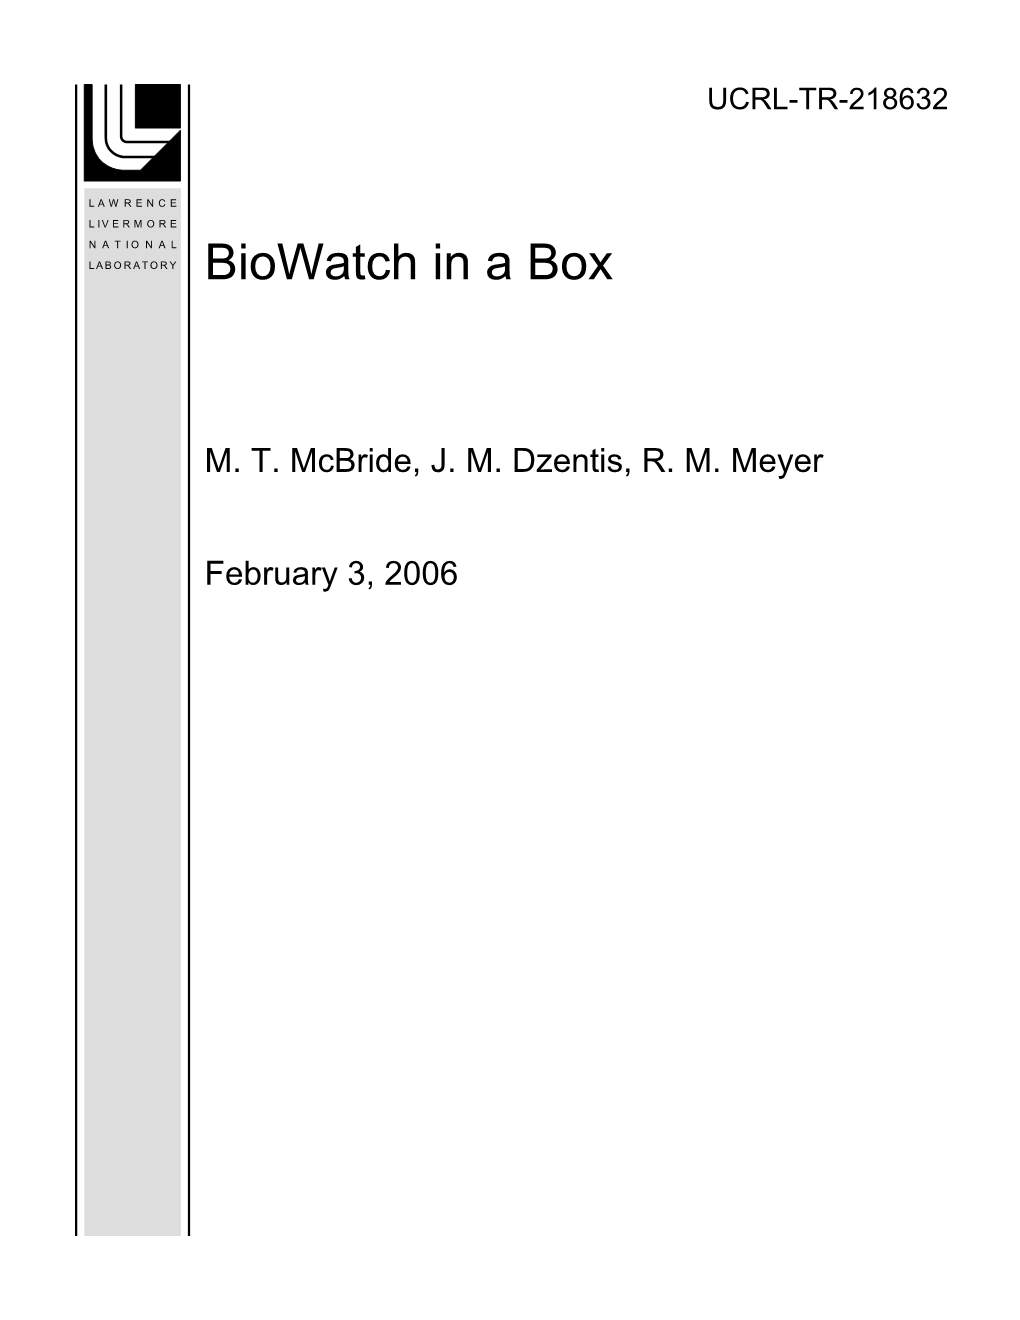 Biowatch in a Box